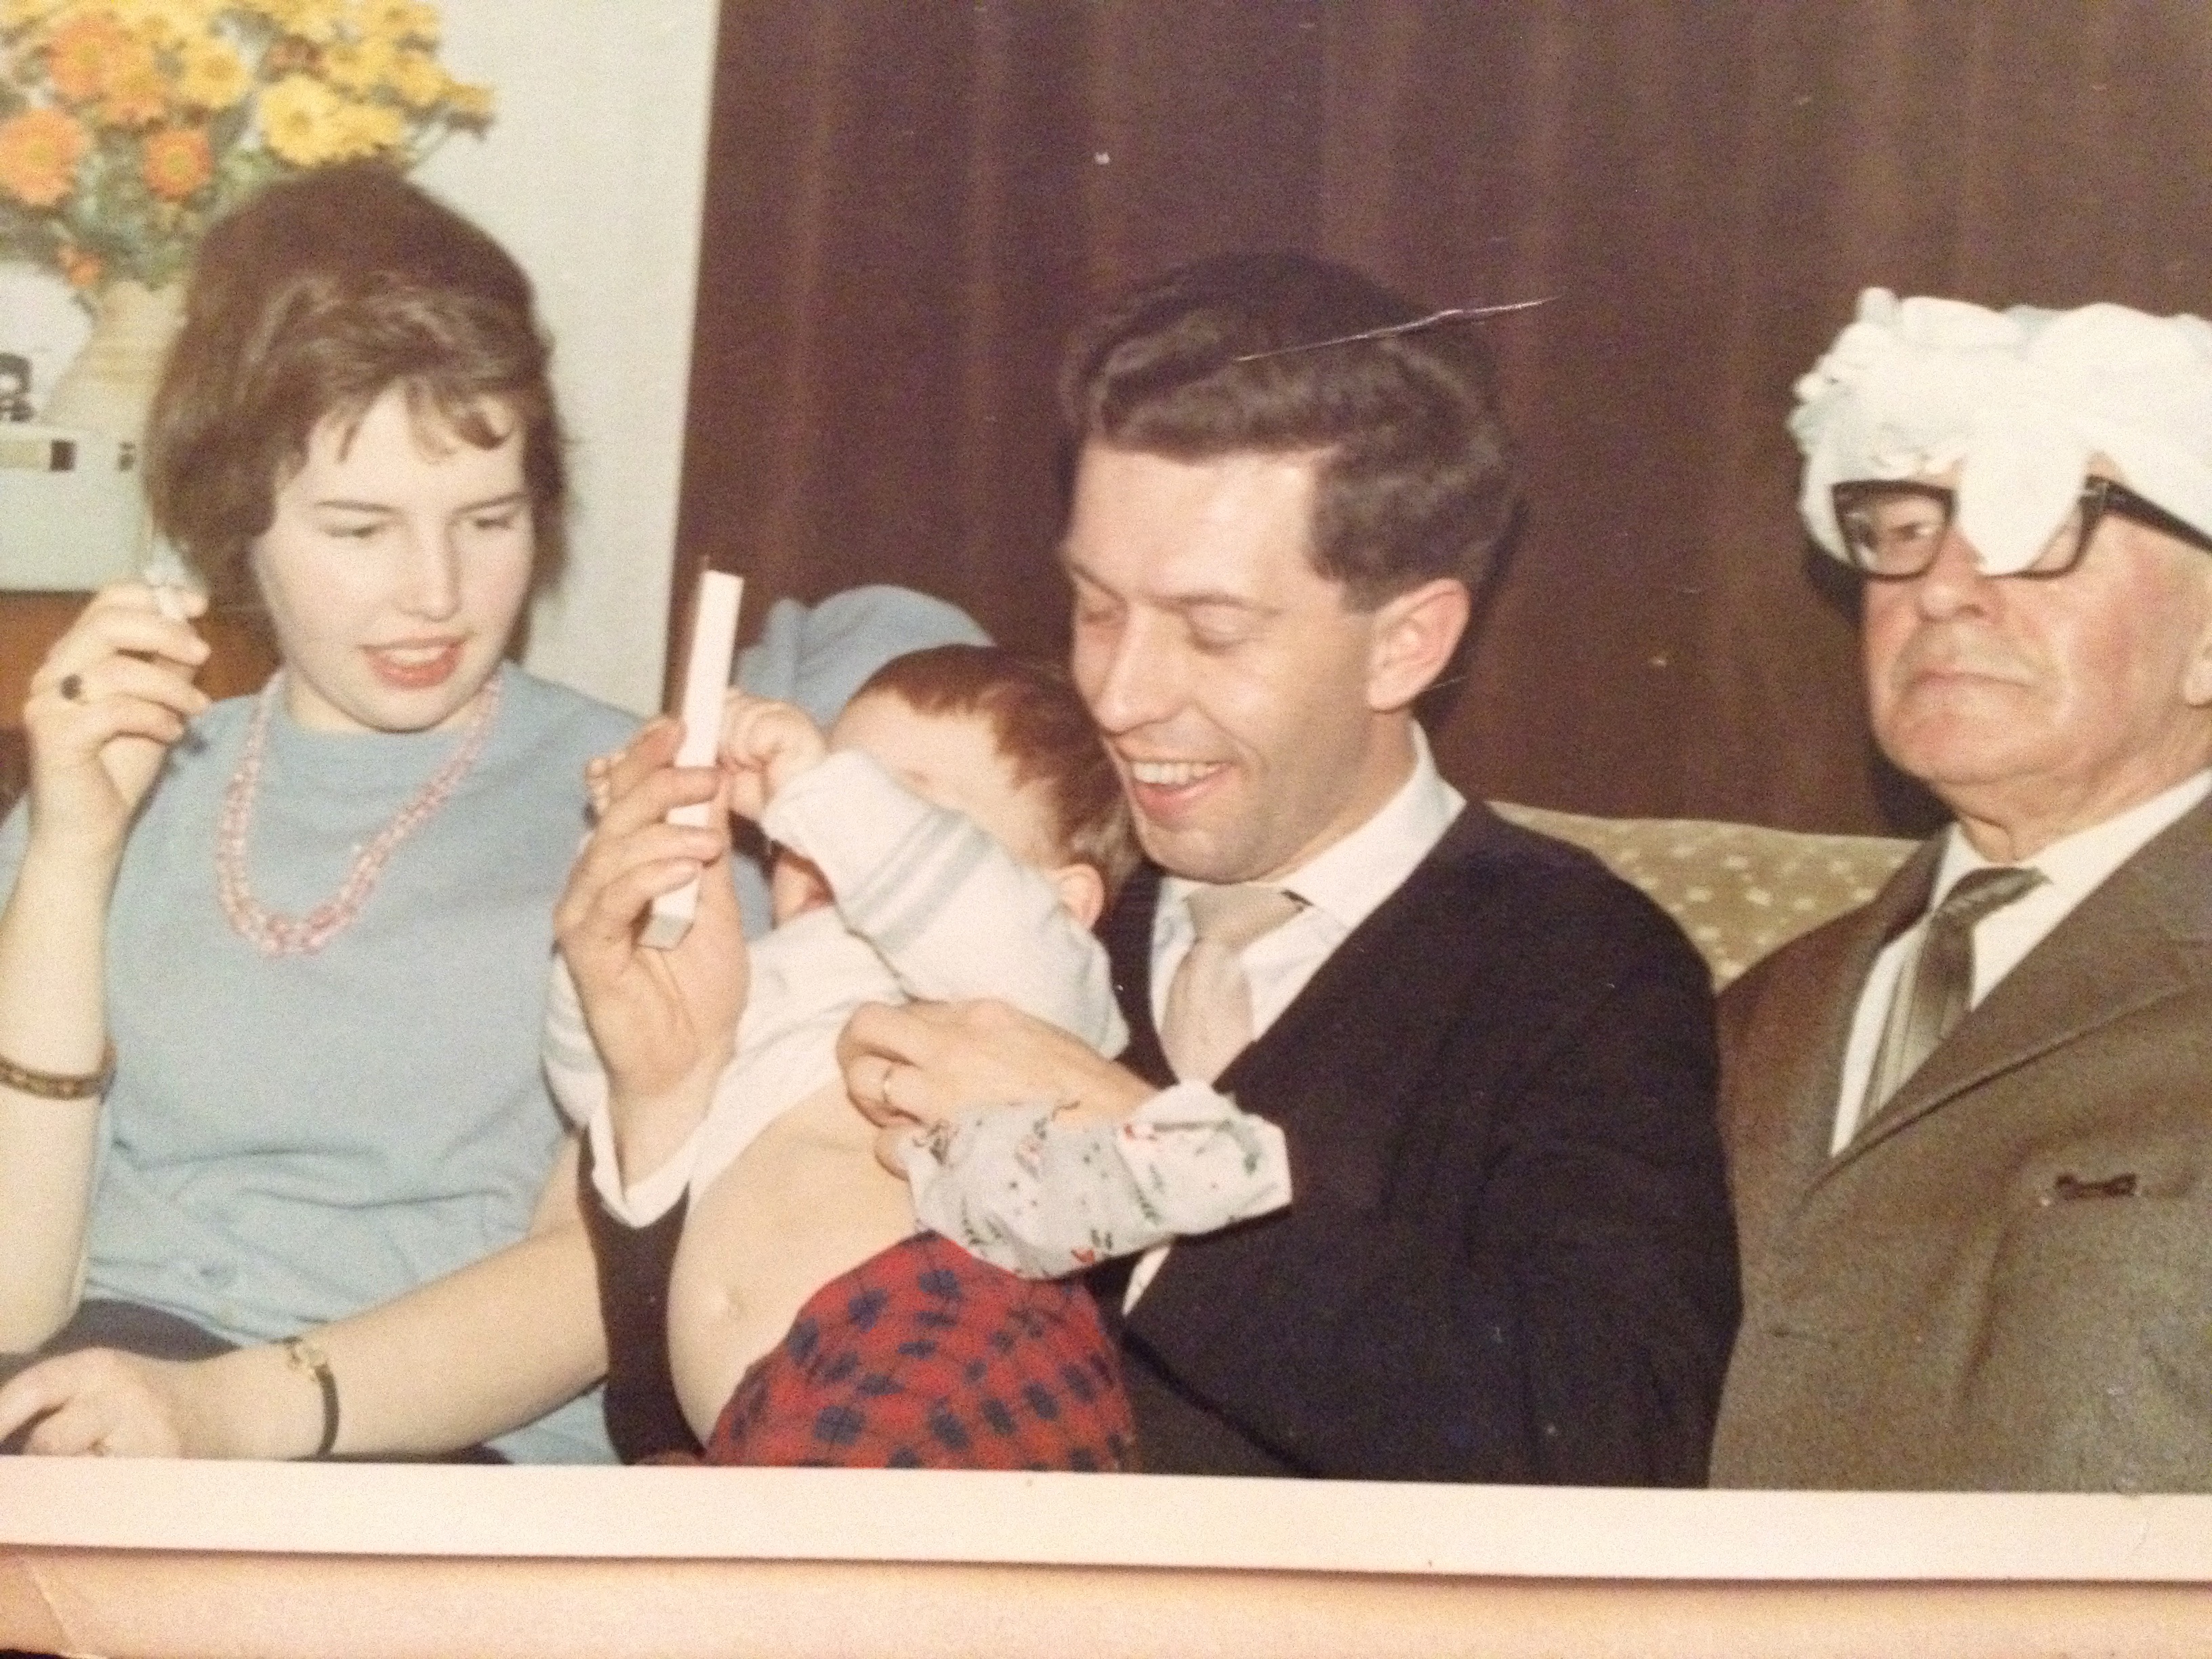 Zeist, 1965. vlnr mijn tante Eefje Hugenholtz-Wedekind (1943), mijn oom Albert Hugenholtz (1937), die mij op schoot heeft en mijn opa Gerhard Hugenholtz (1889-1969) met een theedoek om zijn hoofd :-)